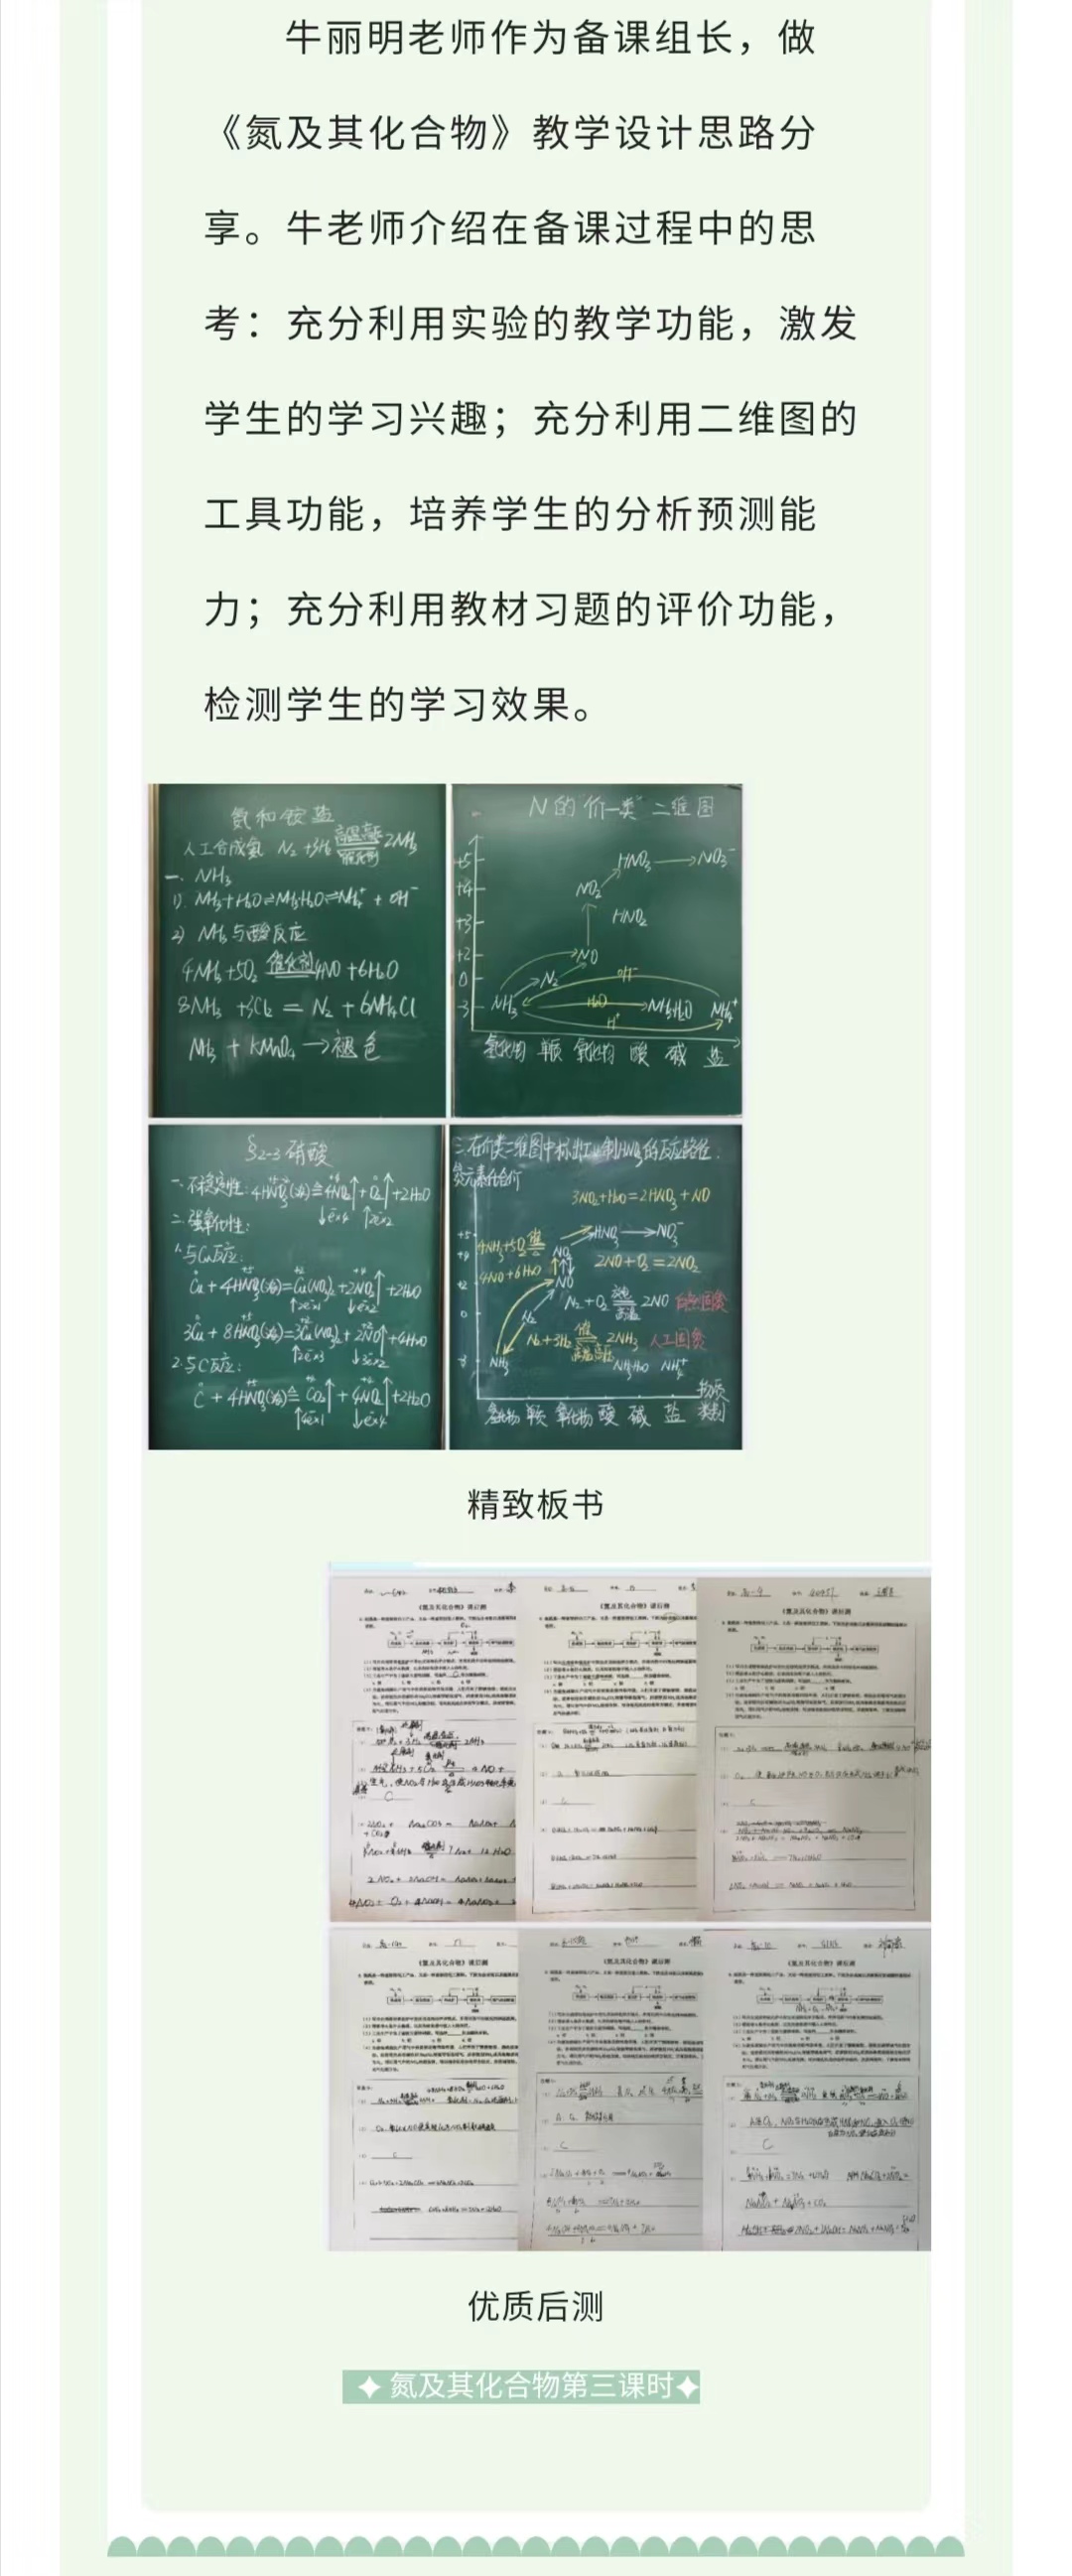 化学教研 (4).jpg